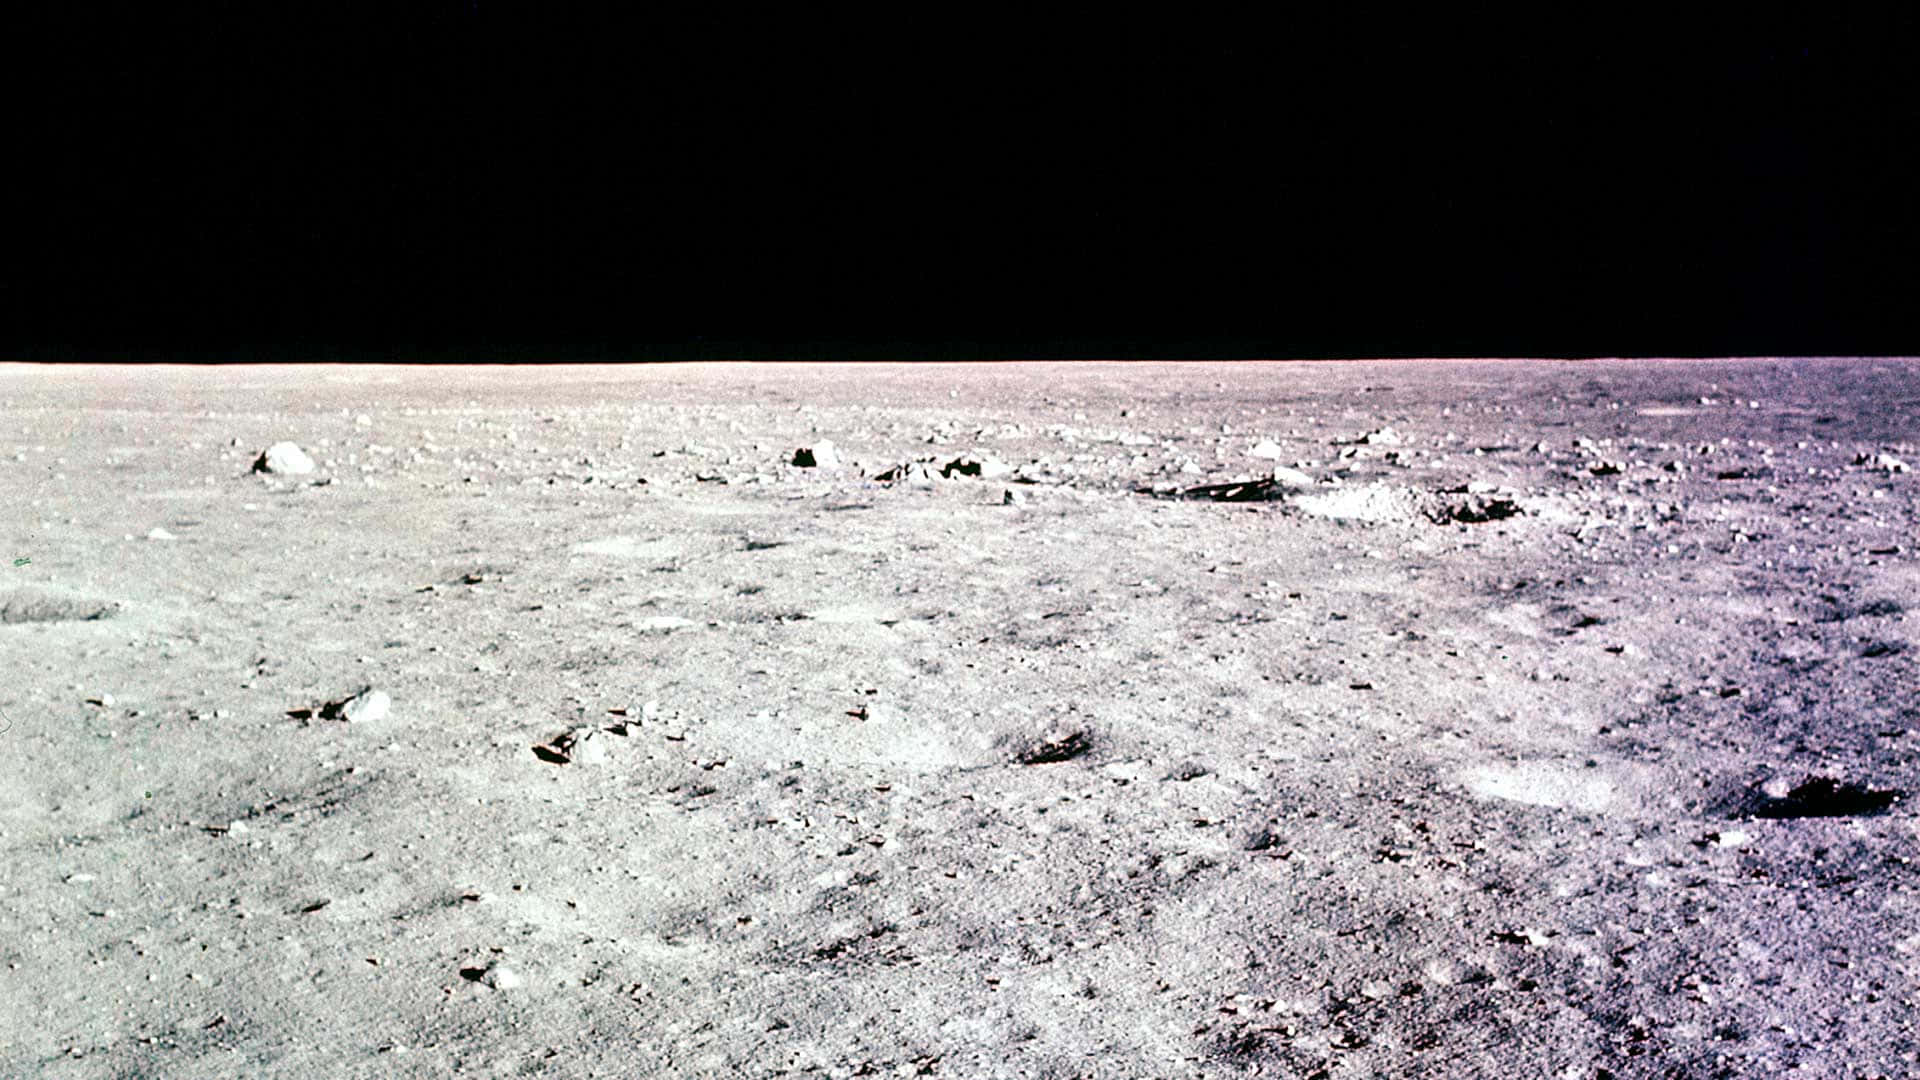 Imagende La Superficie Lunar Del Apollo 11